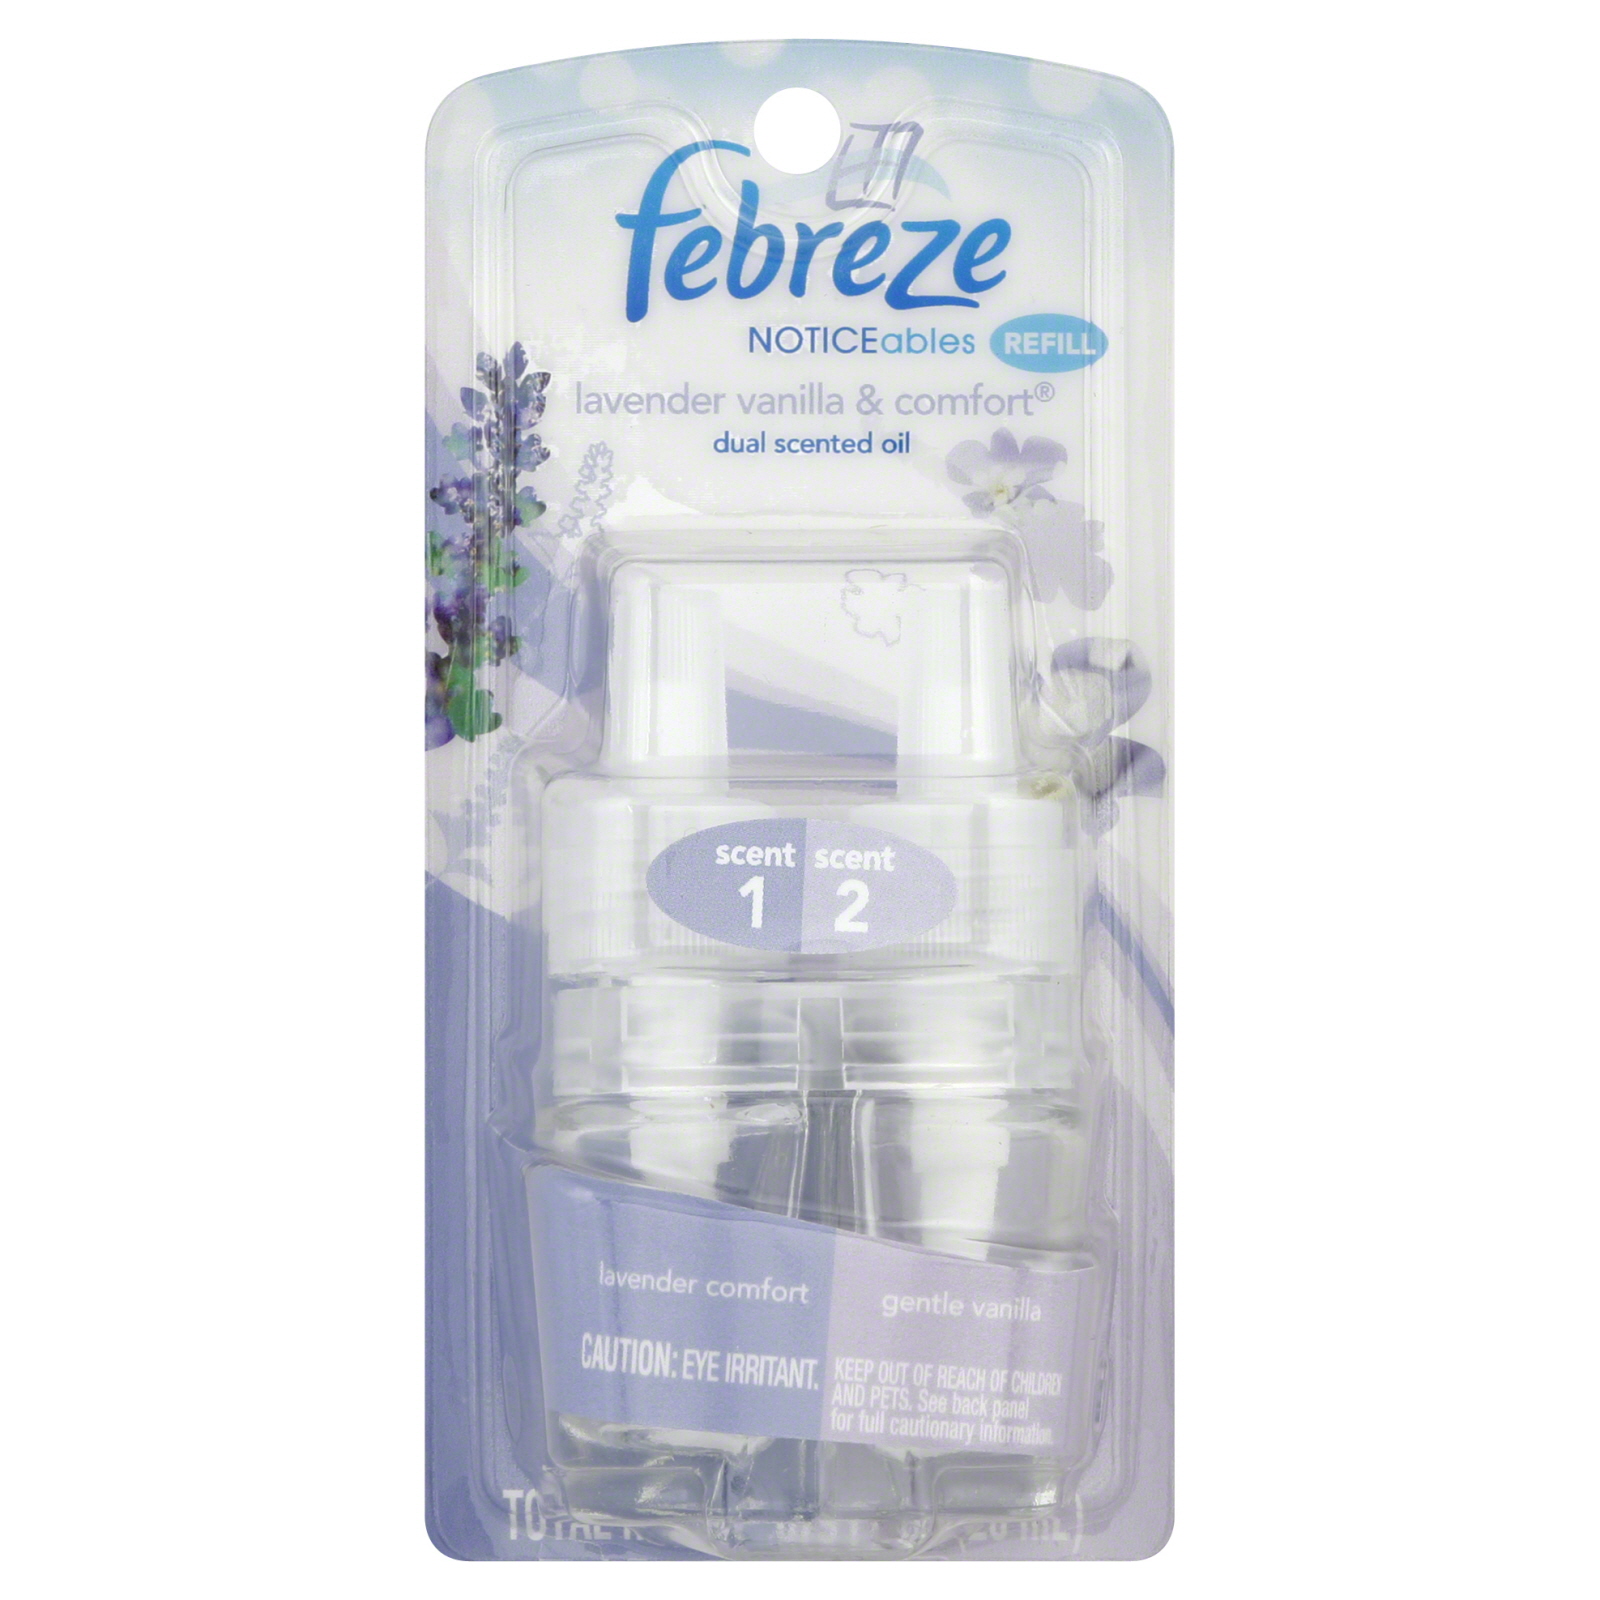 Febreze NOTICEables Dual Scented Oil Refill, Lavender Vanilla & Comfort 0.879 fl oz (26 ml)